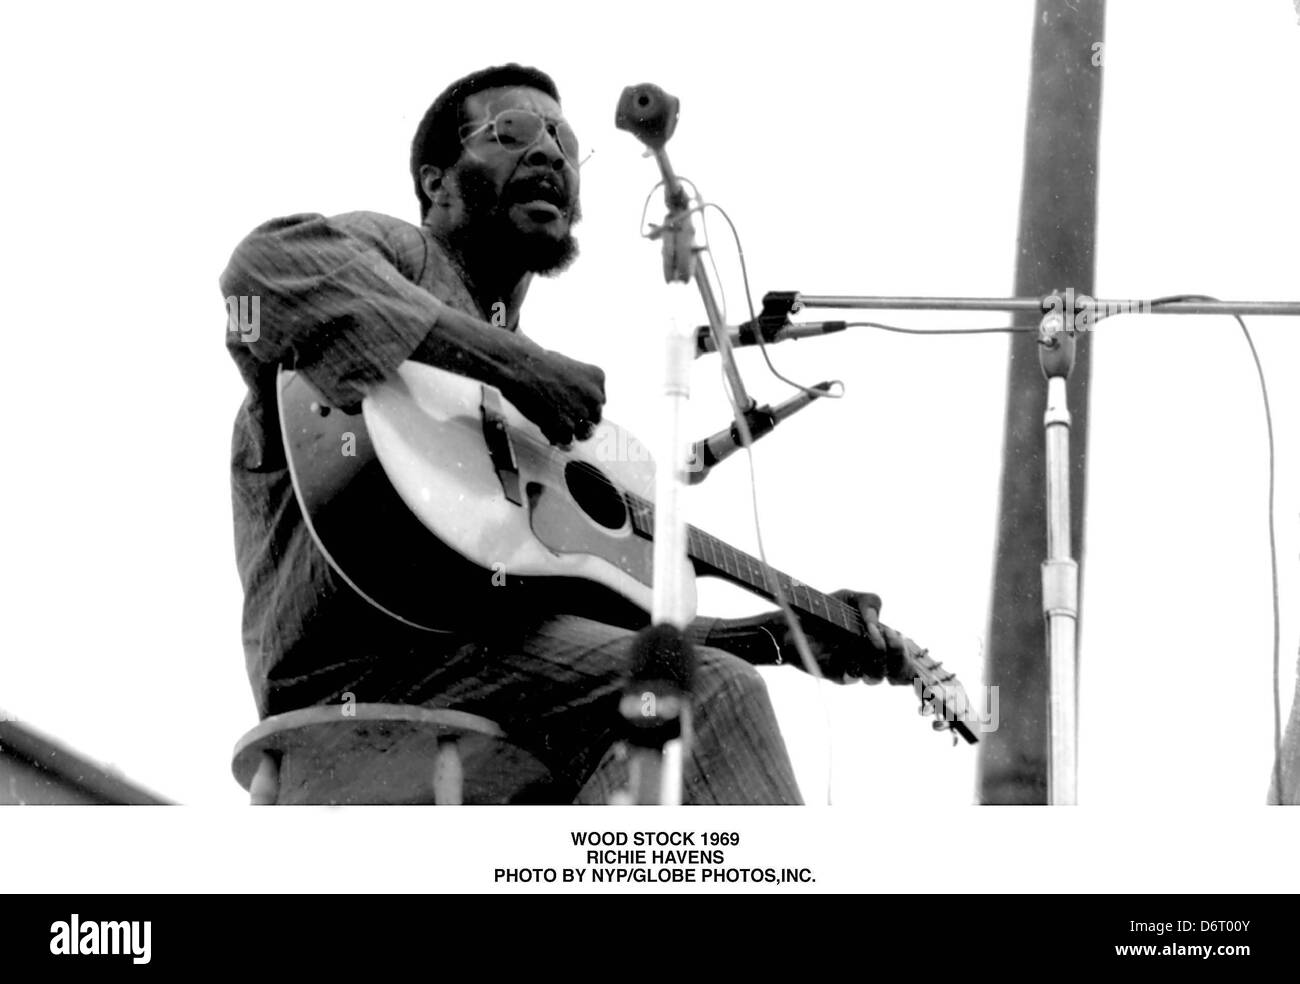 FILE FOTO - Richie Havens, la leggendaria cantante folk che ha aperto il  Woodstock Music Festival in 1969 con una voce raspy e un urgente strummed  chitarra, morto lunedì 22 aprile, 2013